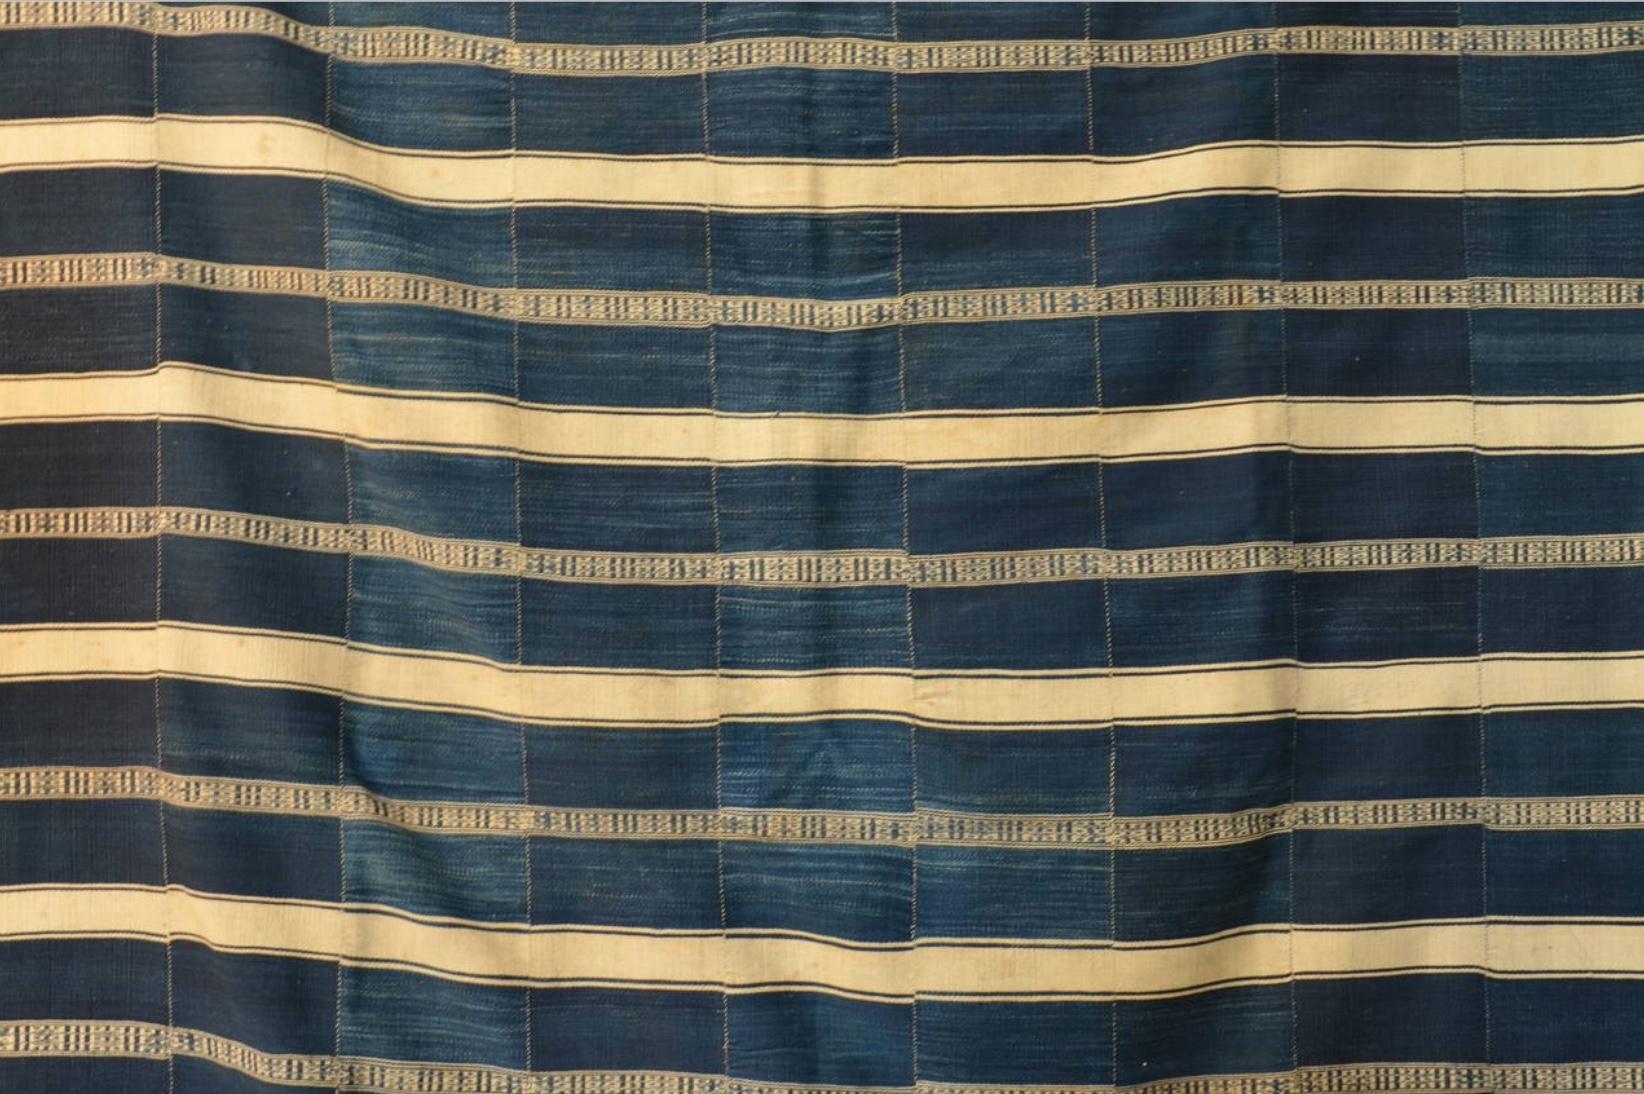 Textile indigo d'Afrique de l'Ouest de qualité muséale. Du Dahomey (Bénin), vers 1925. 

La même pièce fait partie de la collection permanente du Musée de l'Homme à Paris.

Les textiles africains de la plus haute qualité suscitent un vif intérêt